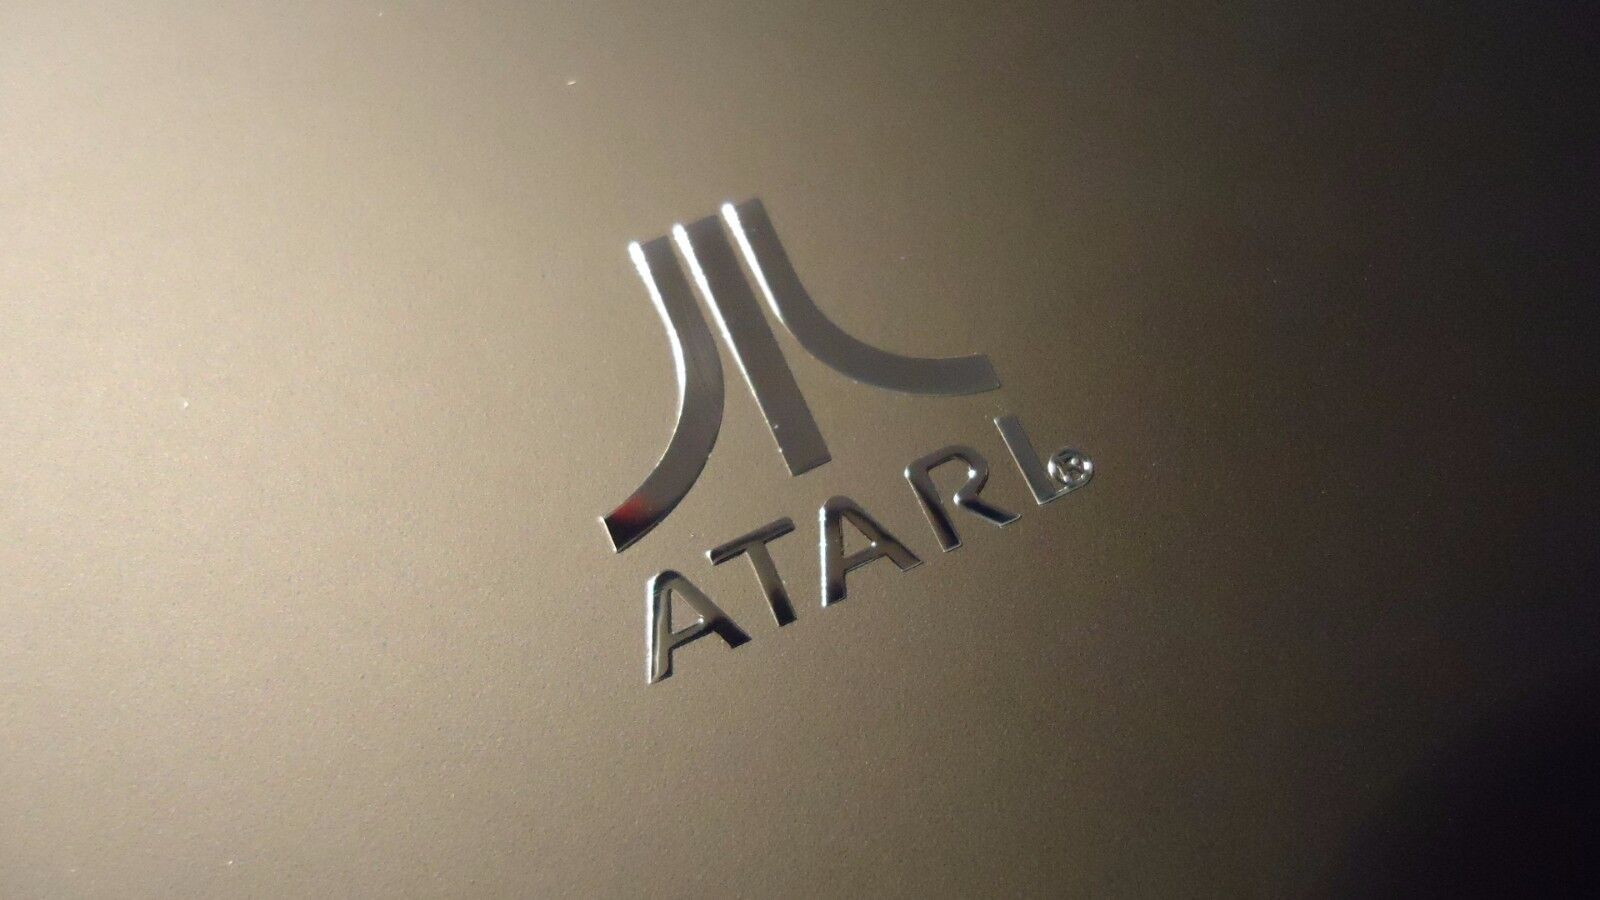 Atari Label / Aufkleber / Sticker / Badge / Logo 1.5 x 1.7cm  [134]